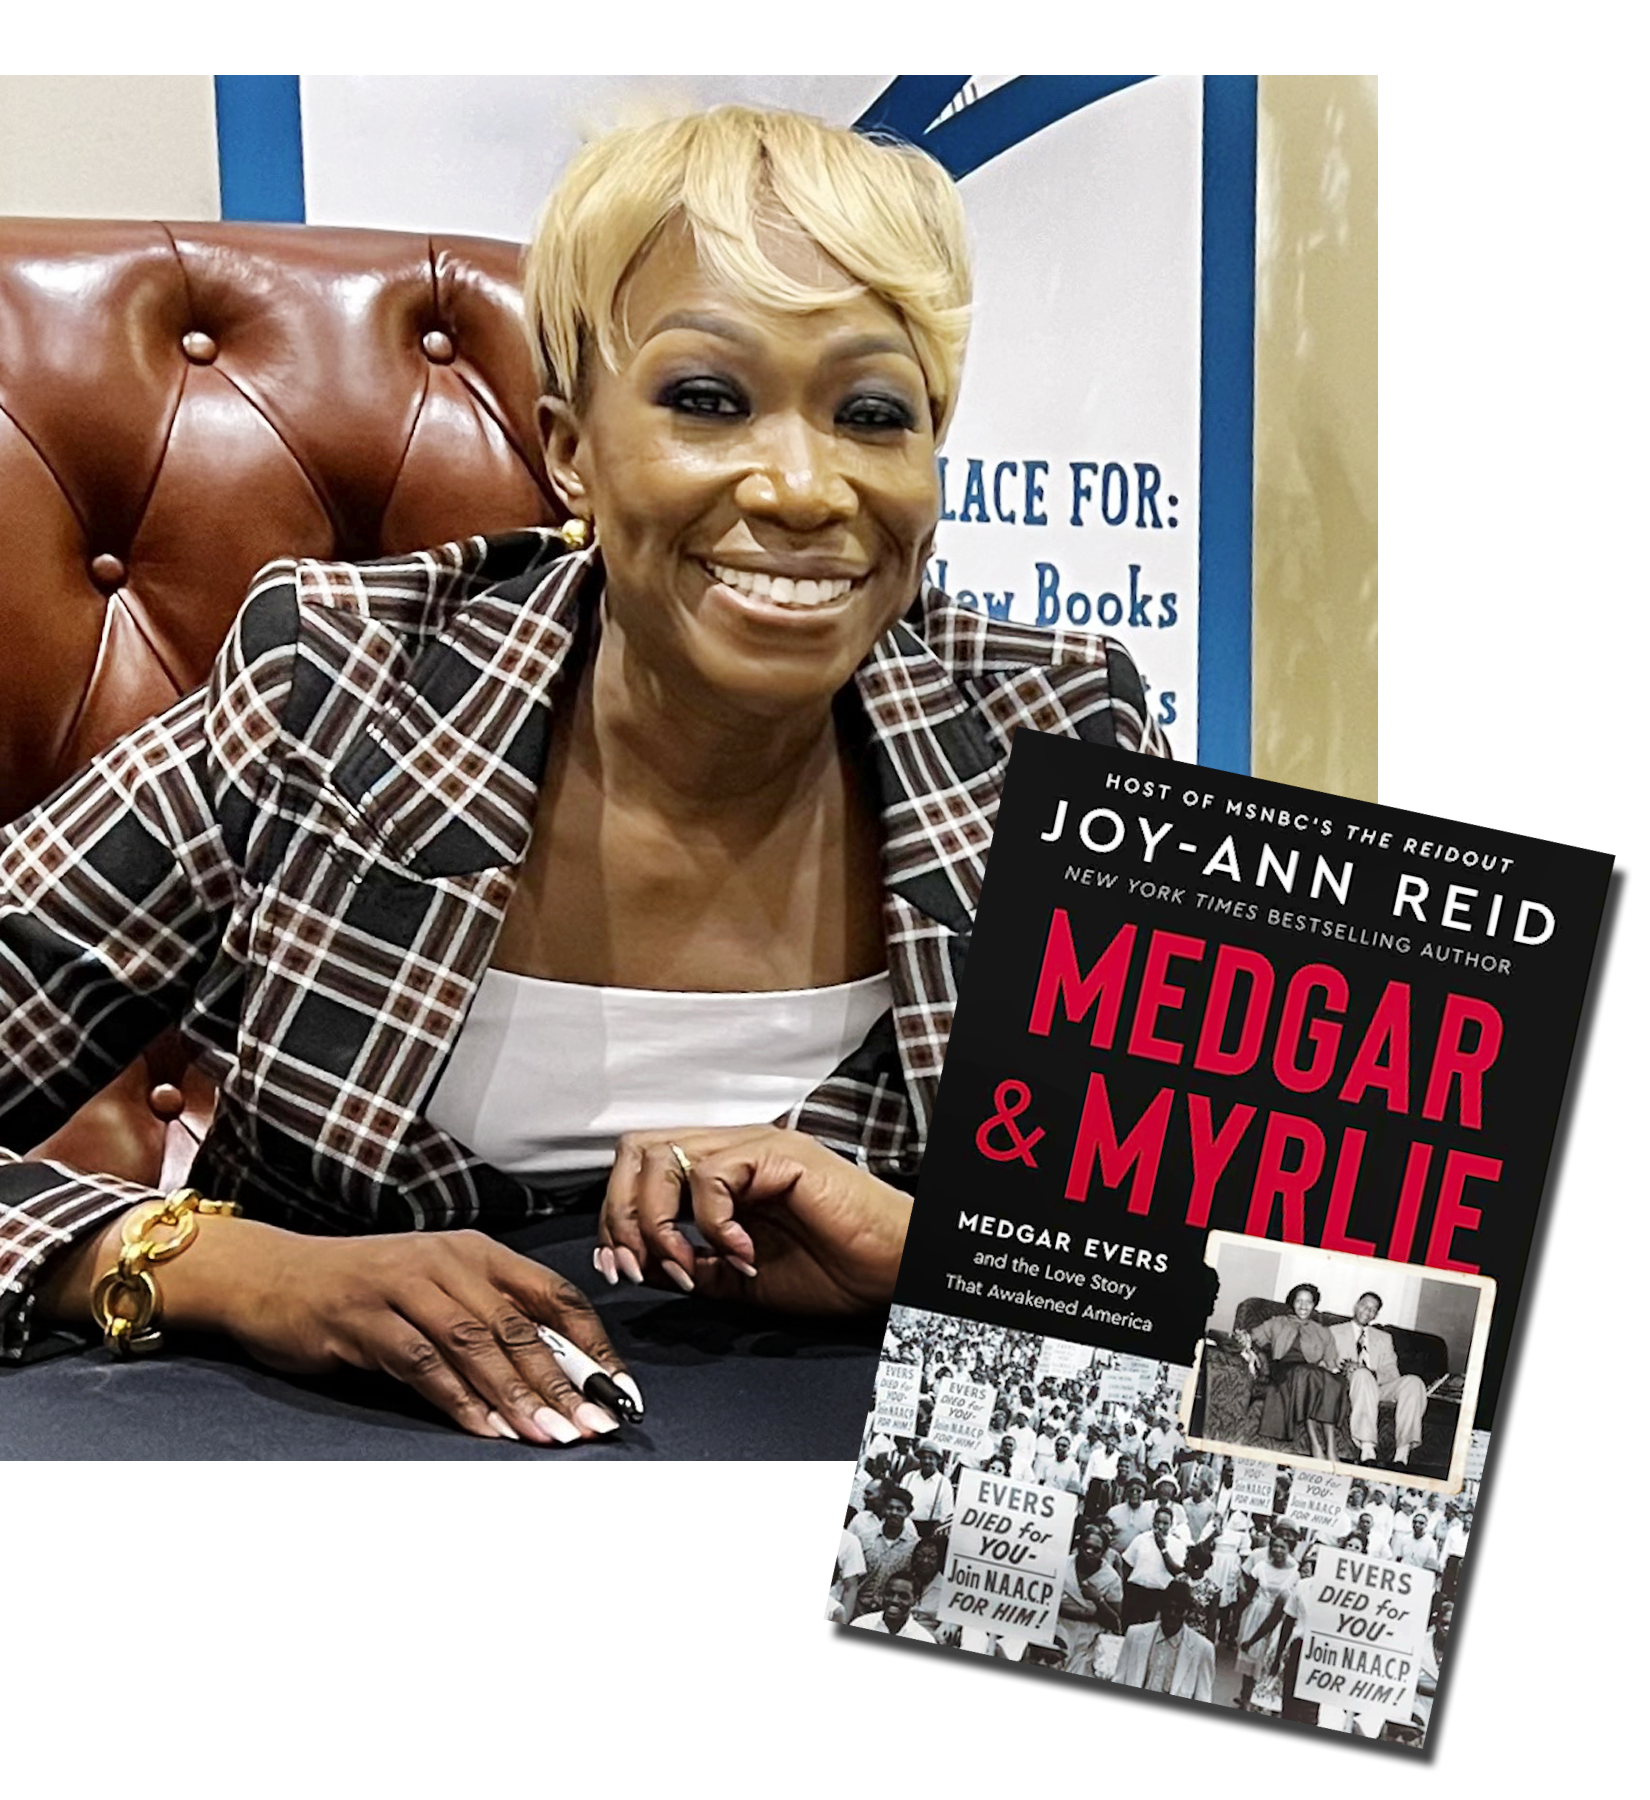 Joy Reid has a new book Medgar & Myrlie